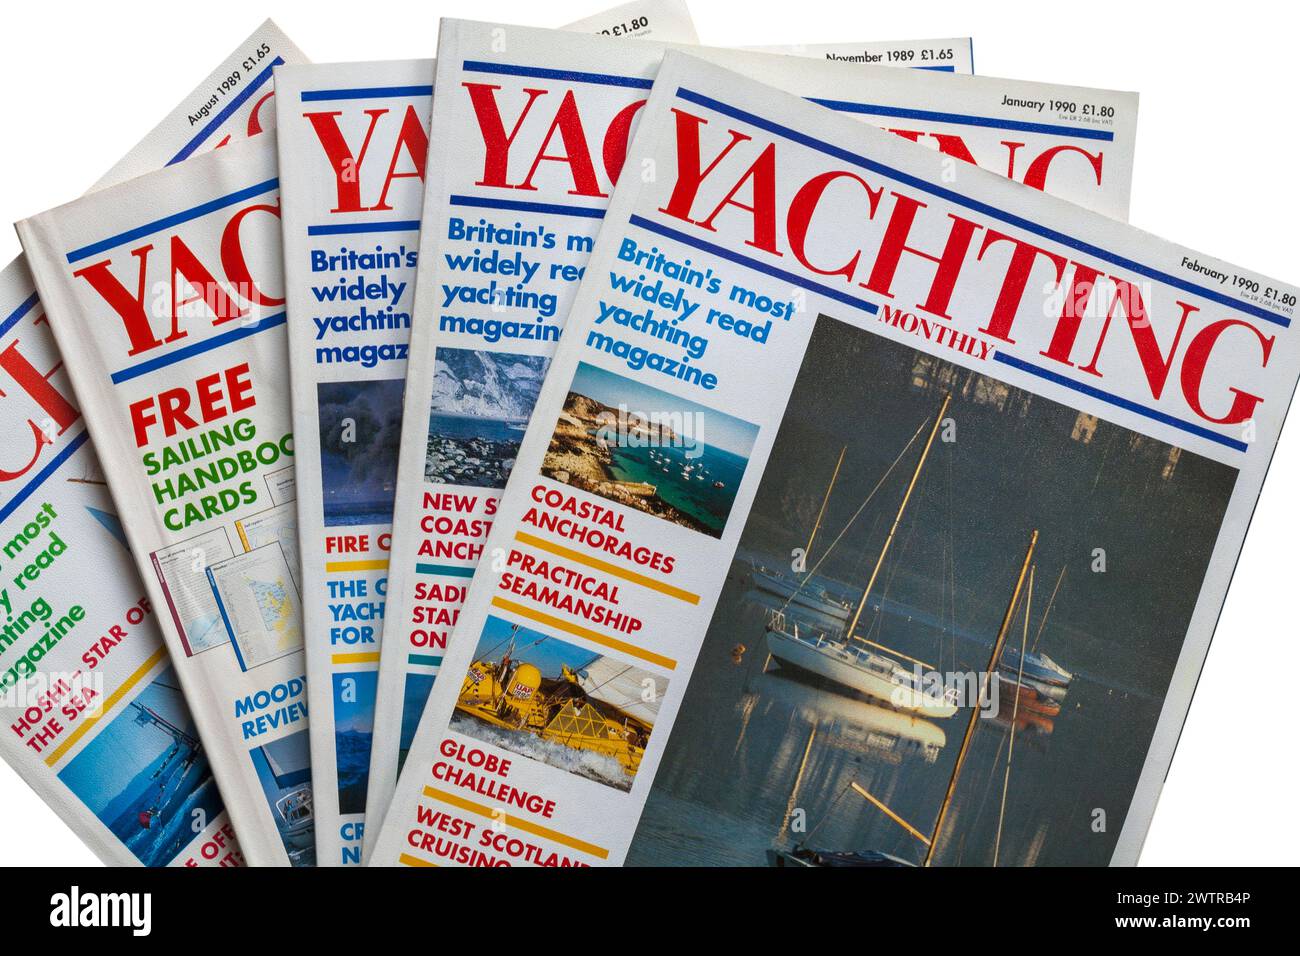 Una pila di vecchie riviste Yachting Monthly del 1989-1990 su sfondo bianco Foto Stock